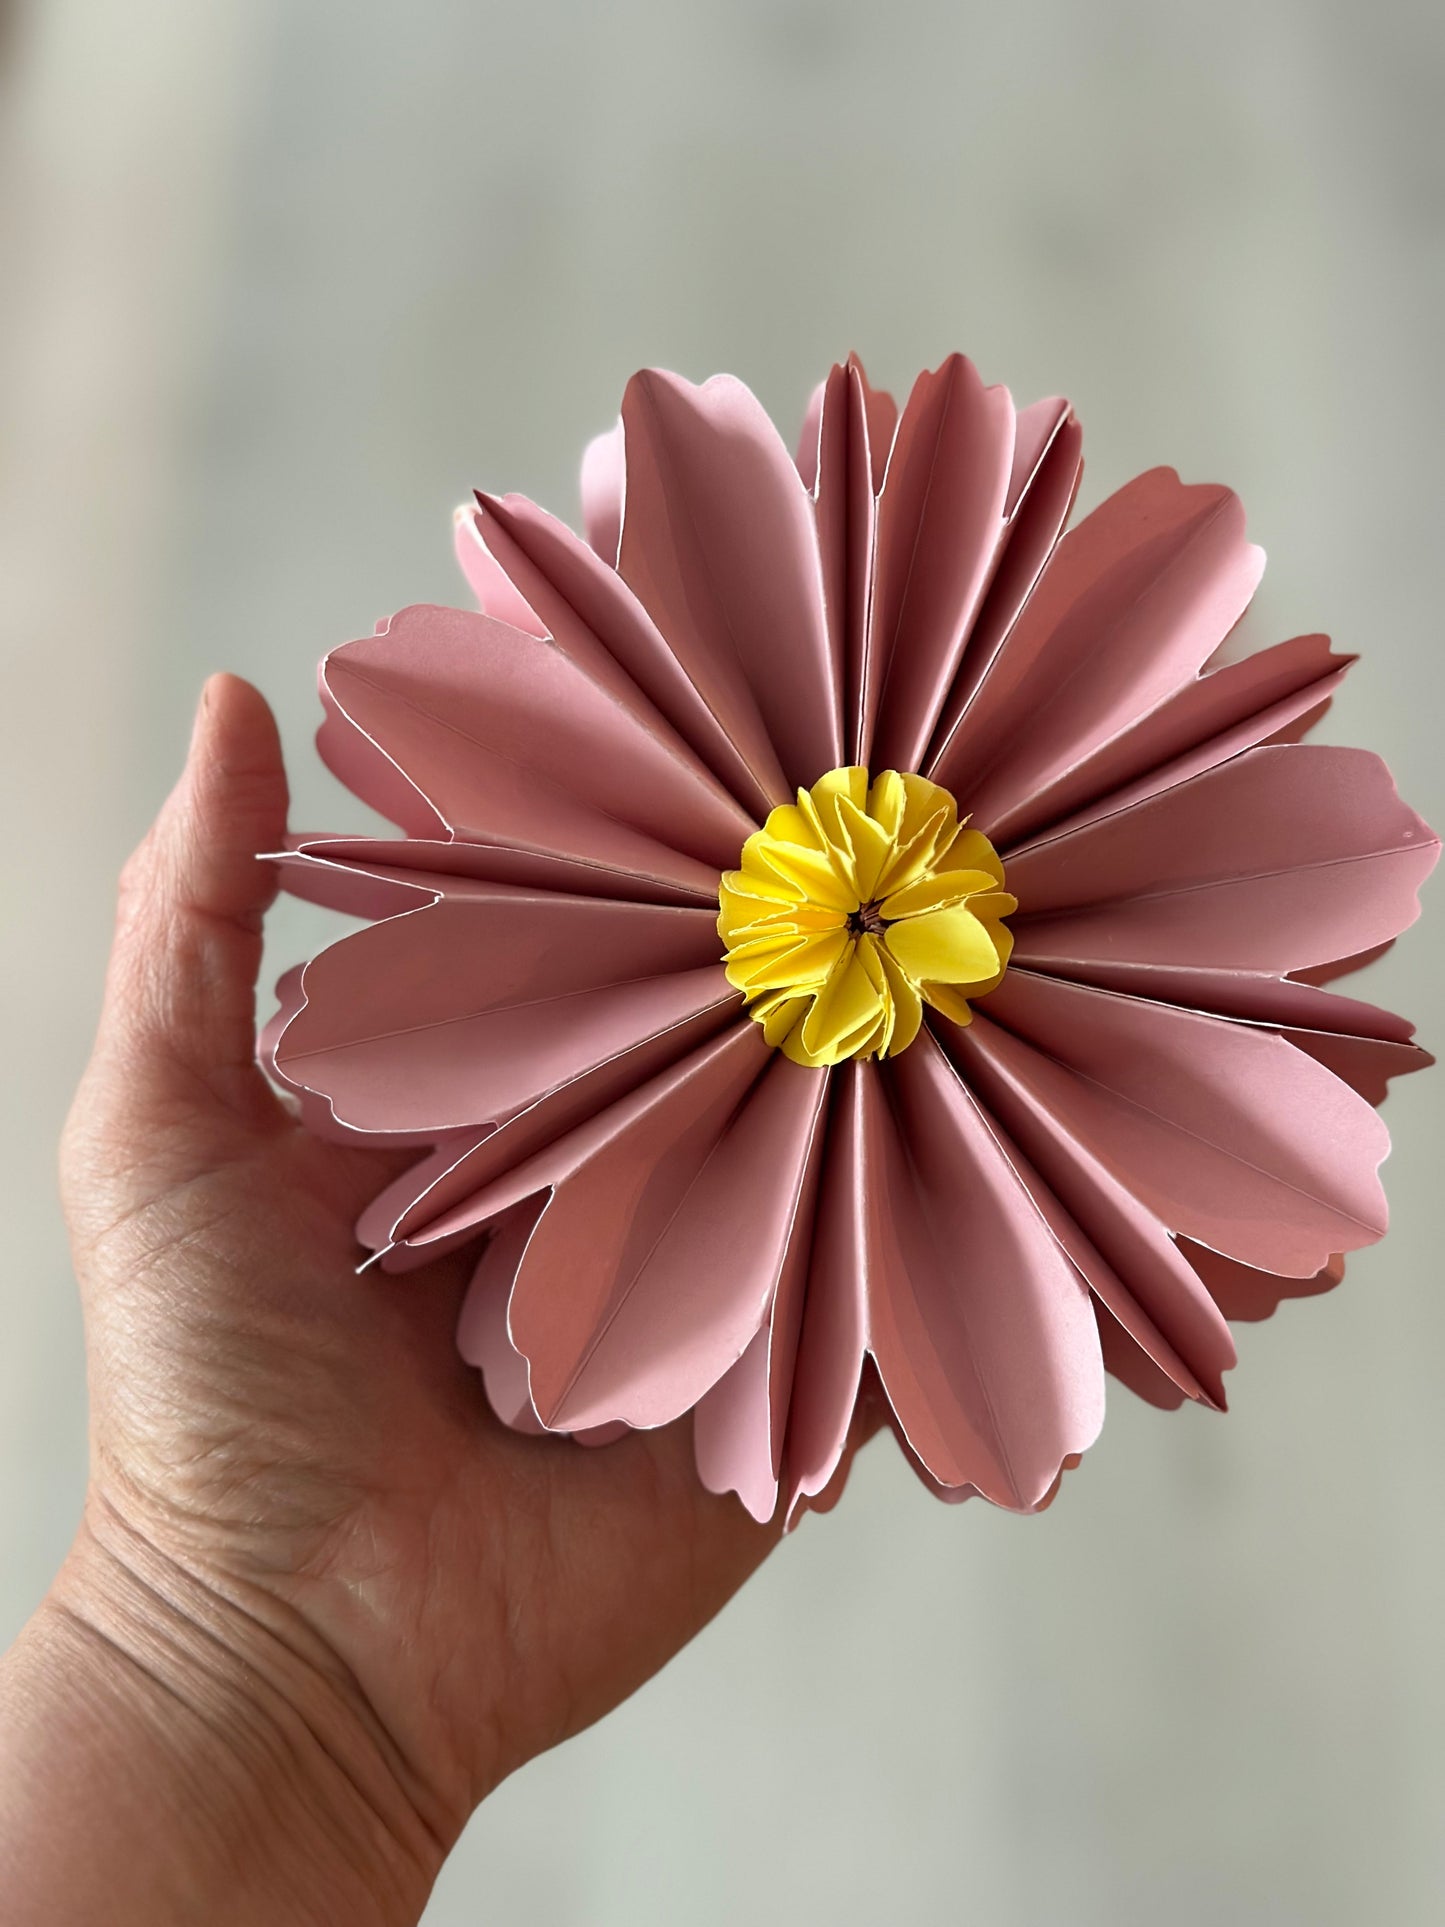 Storefactory, Blommor i papper - Vit/Rosa